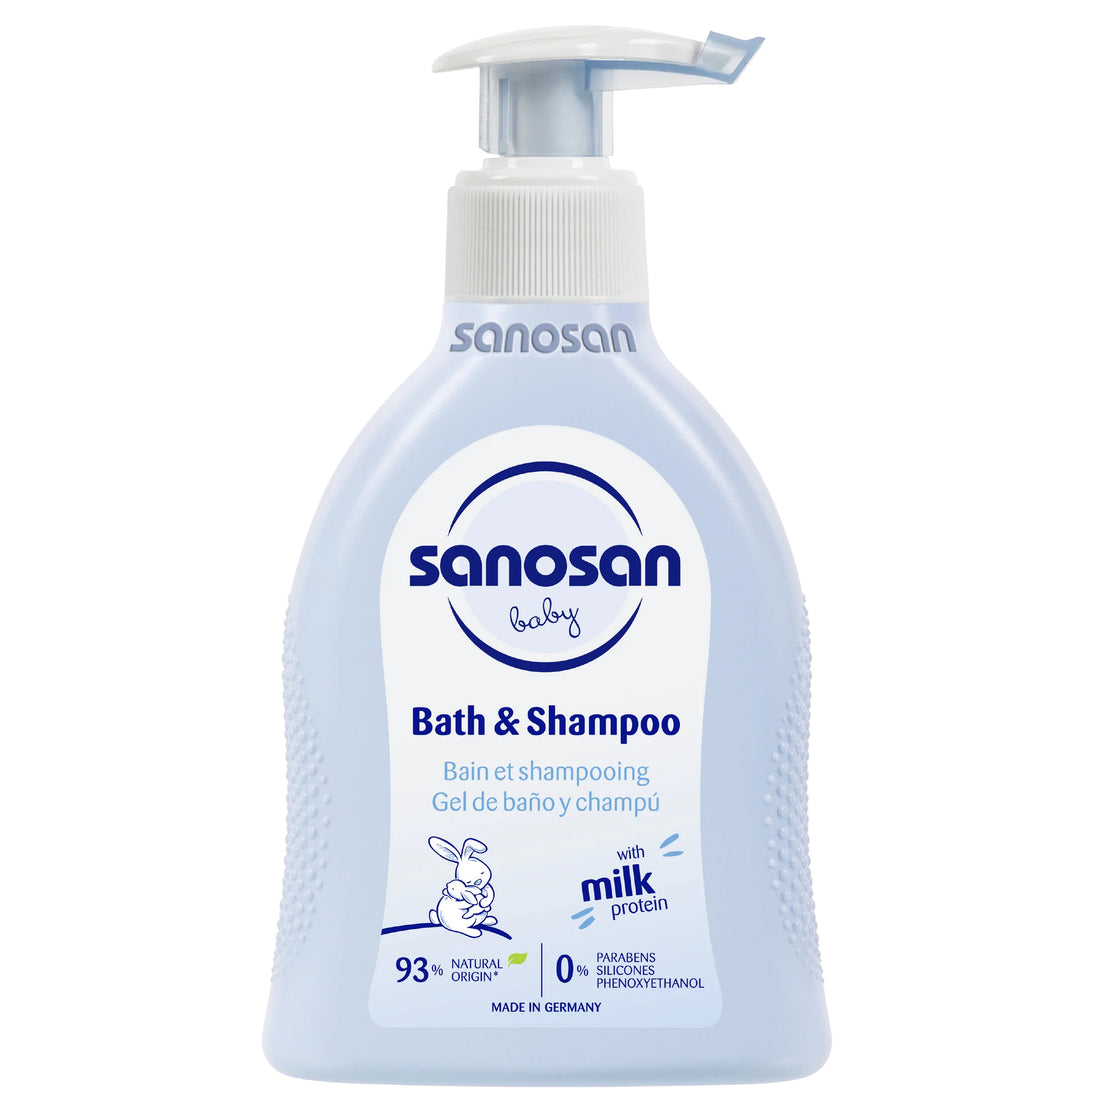 Sanosan Bath and Shampoo